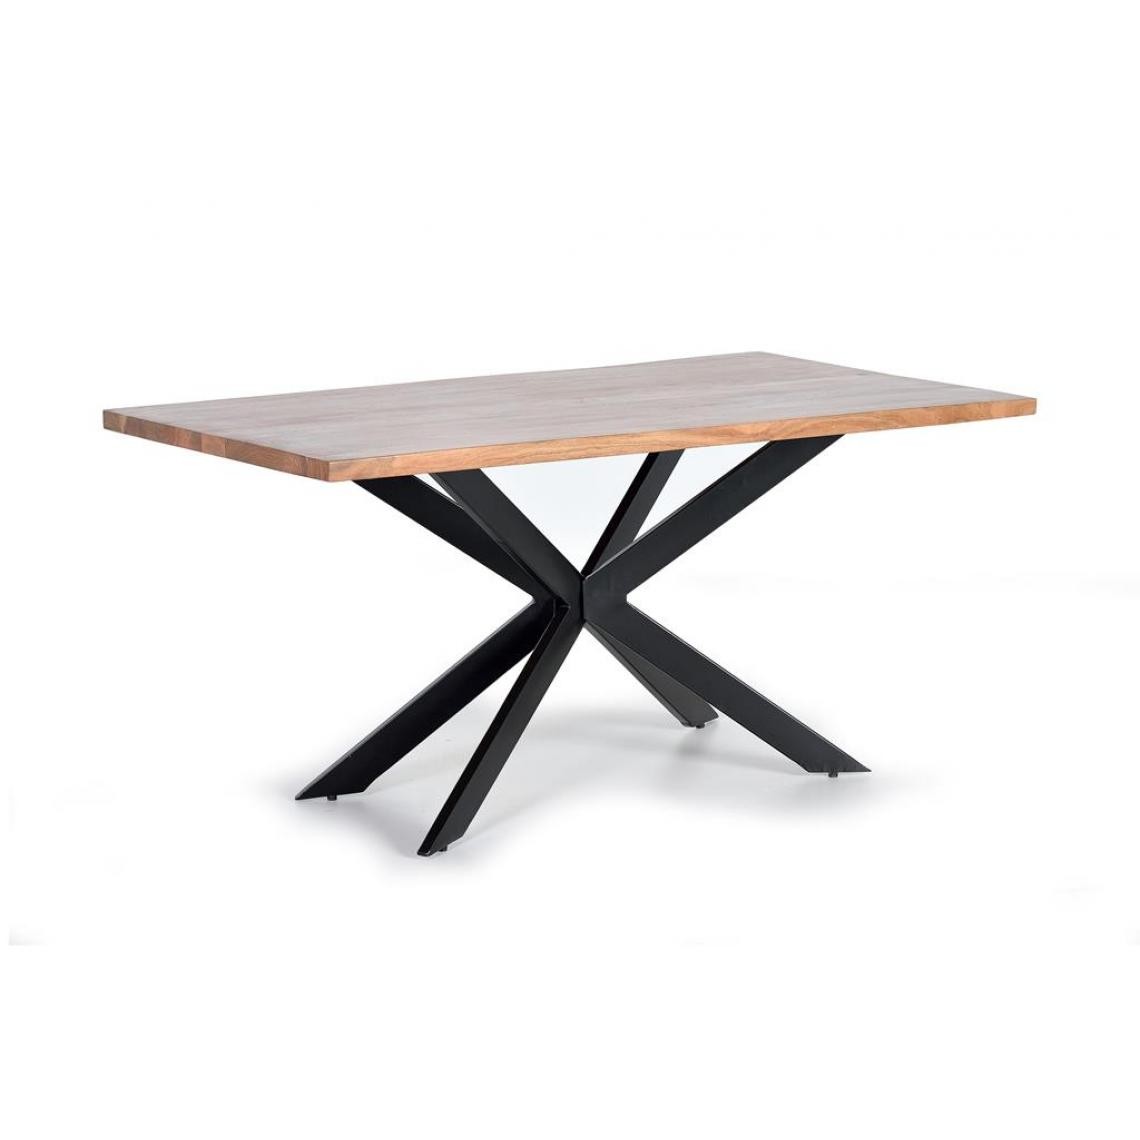 Pegane - Table à manger en bois d'acacia et métal coloris naturel / noir - longueur200 x profondeur100 x hauteur78 cm - Tables à manger